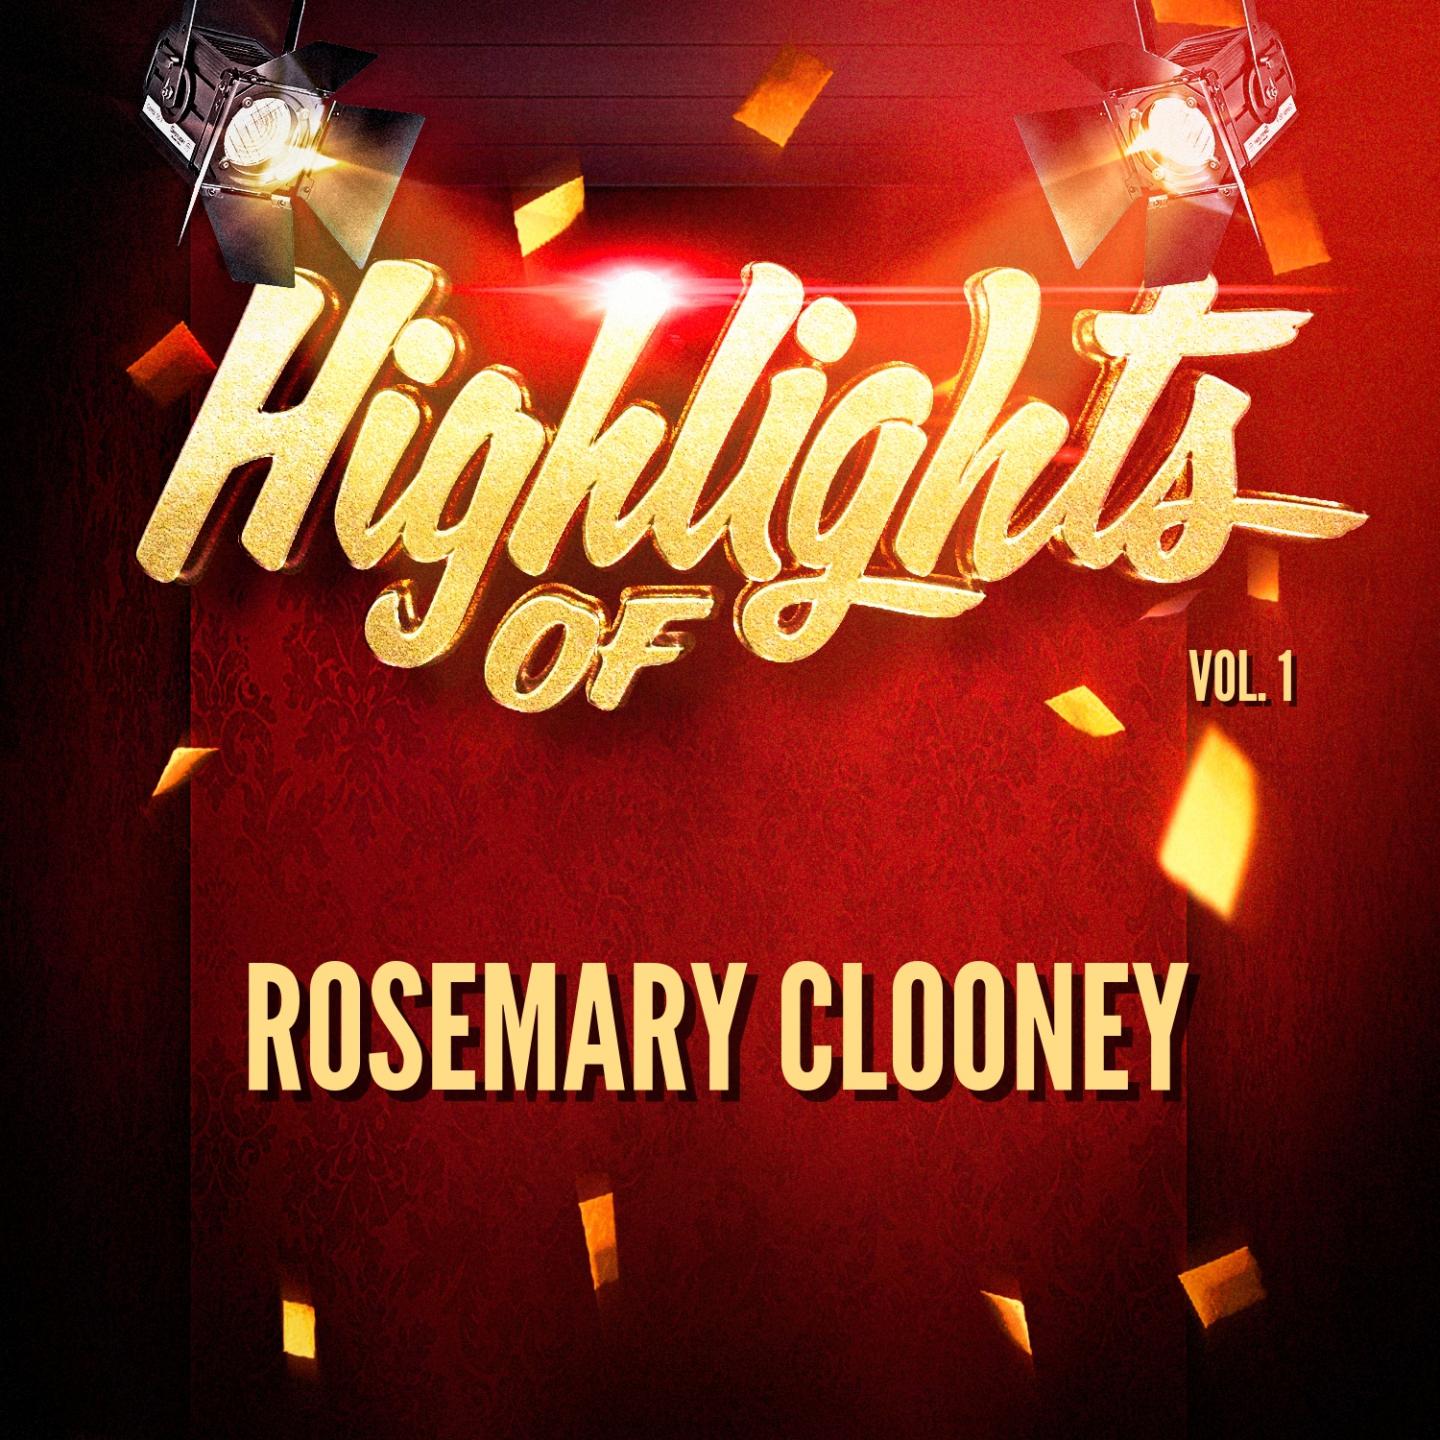 Highlights of Rosemary Clooney, Vol. 1